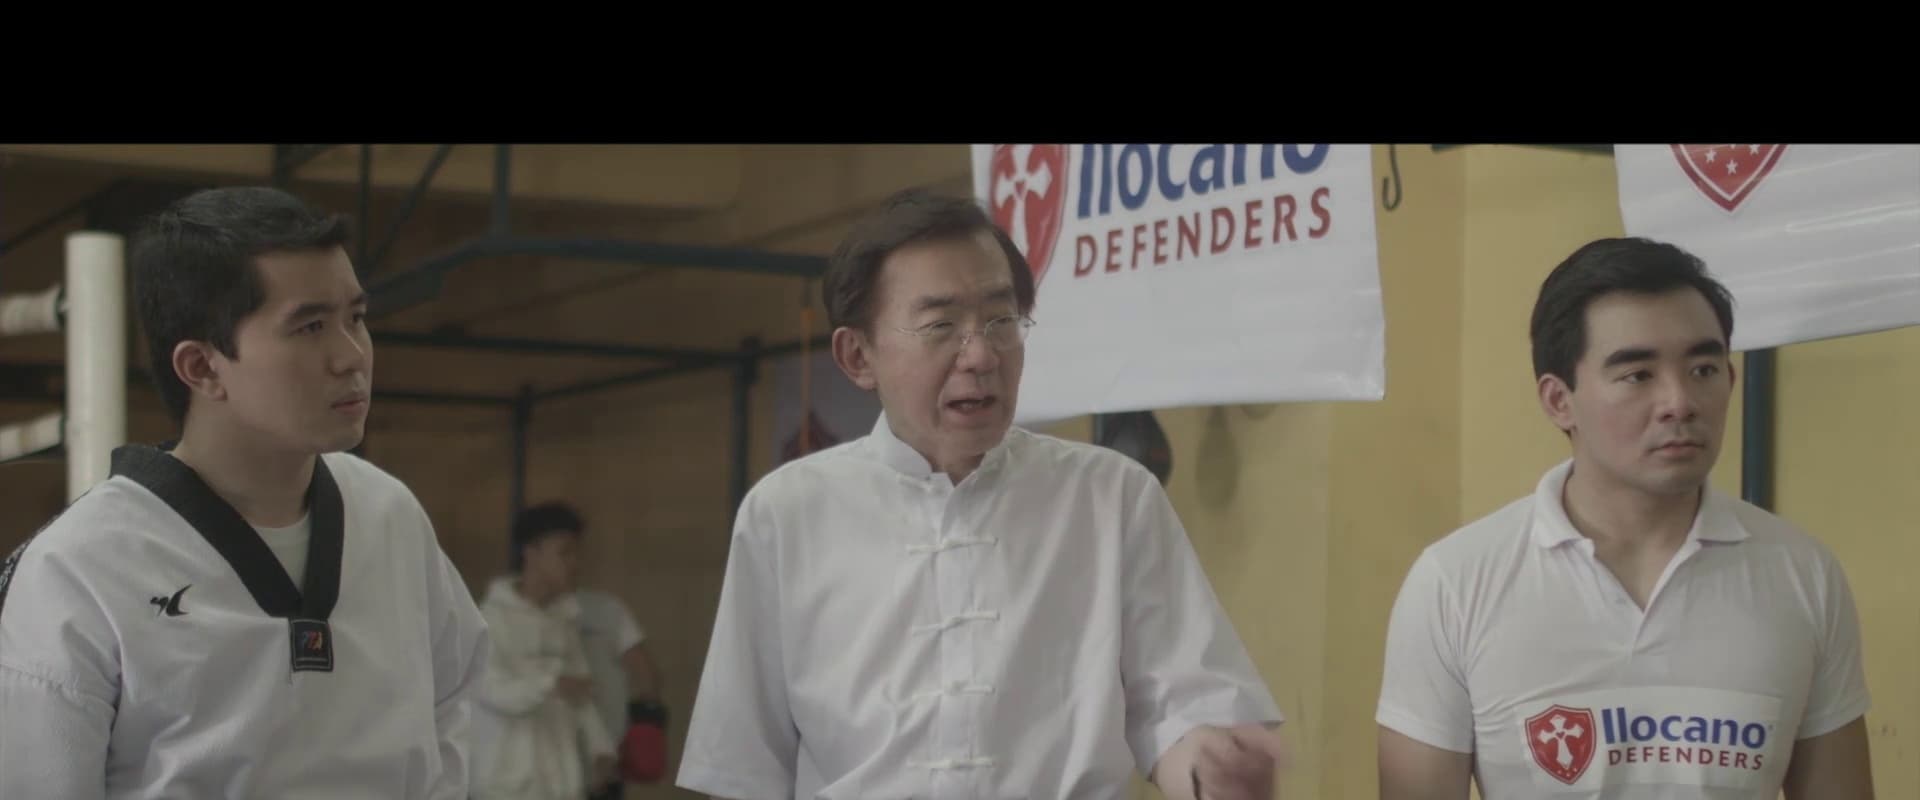 Ilocano Defenders